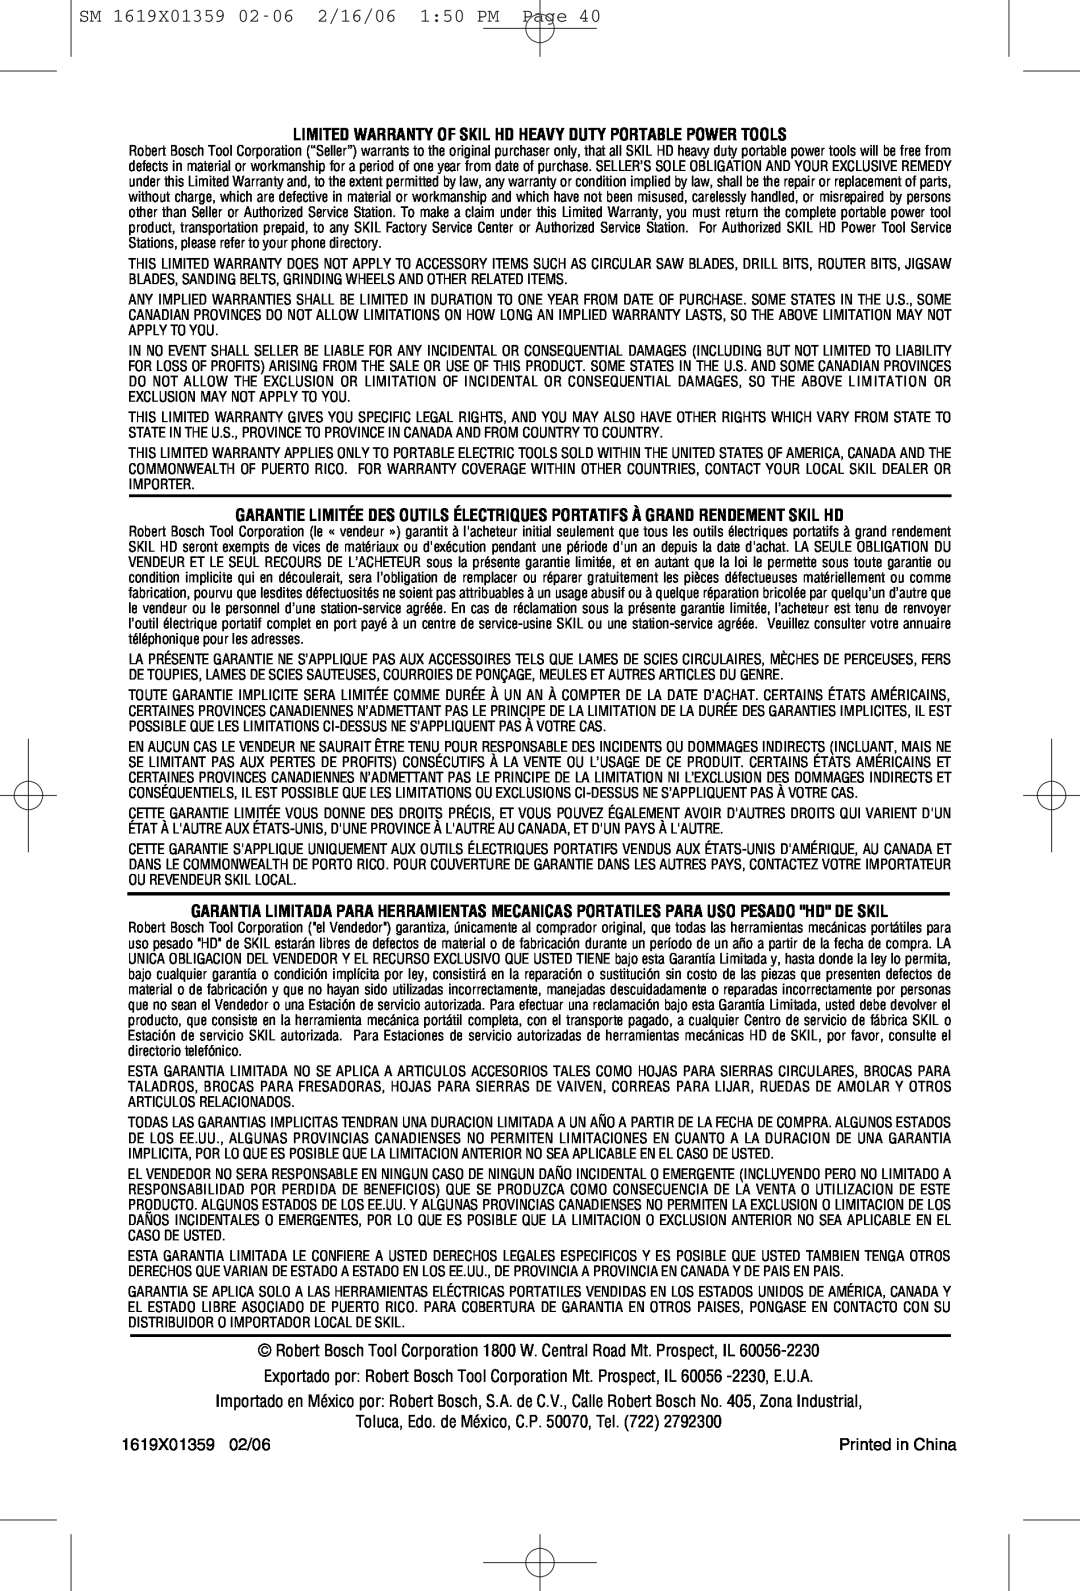 Skil HD5860 manual SM 1619X01359 02-062/16/06 1:50 PM Page, Toluca, Edo. de México, C.P. 50070, Tel. 722, 1619X01359 02/06 